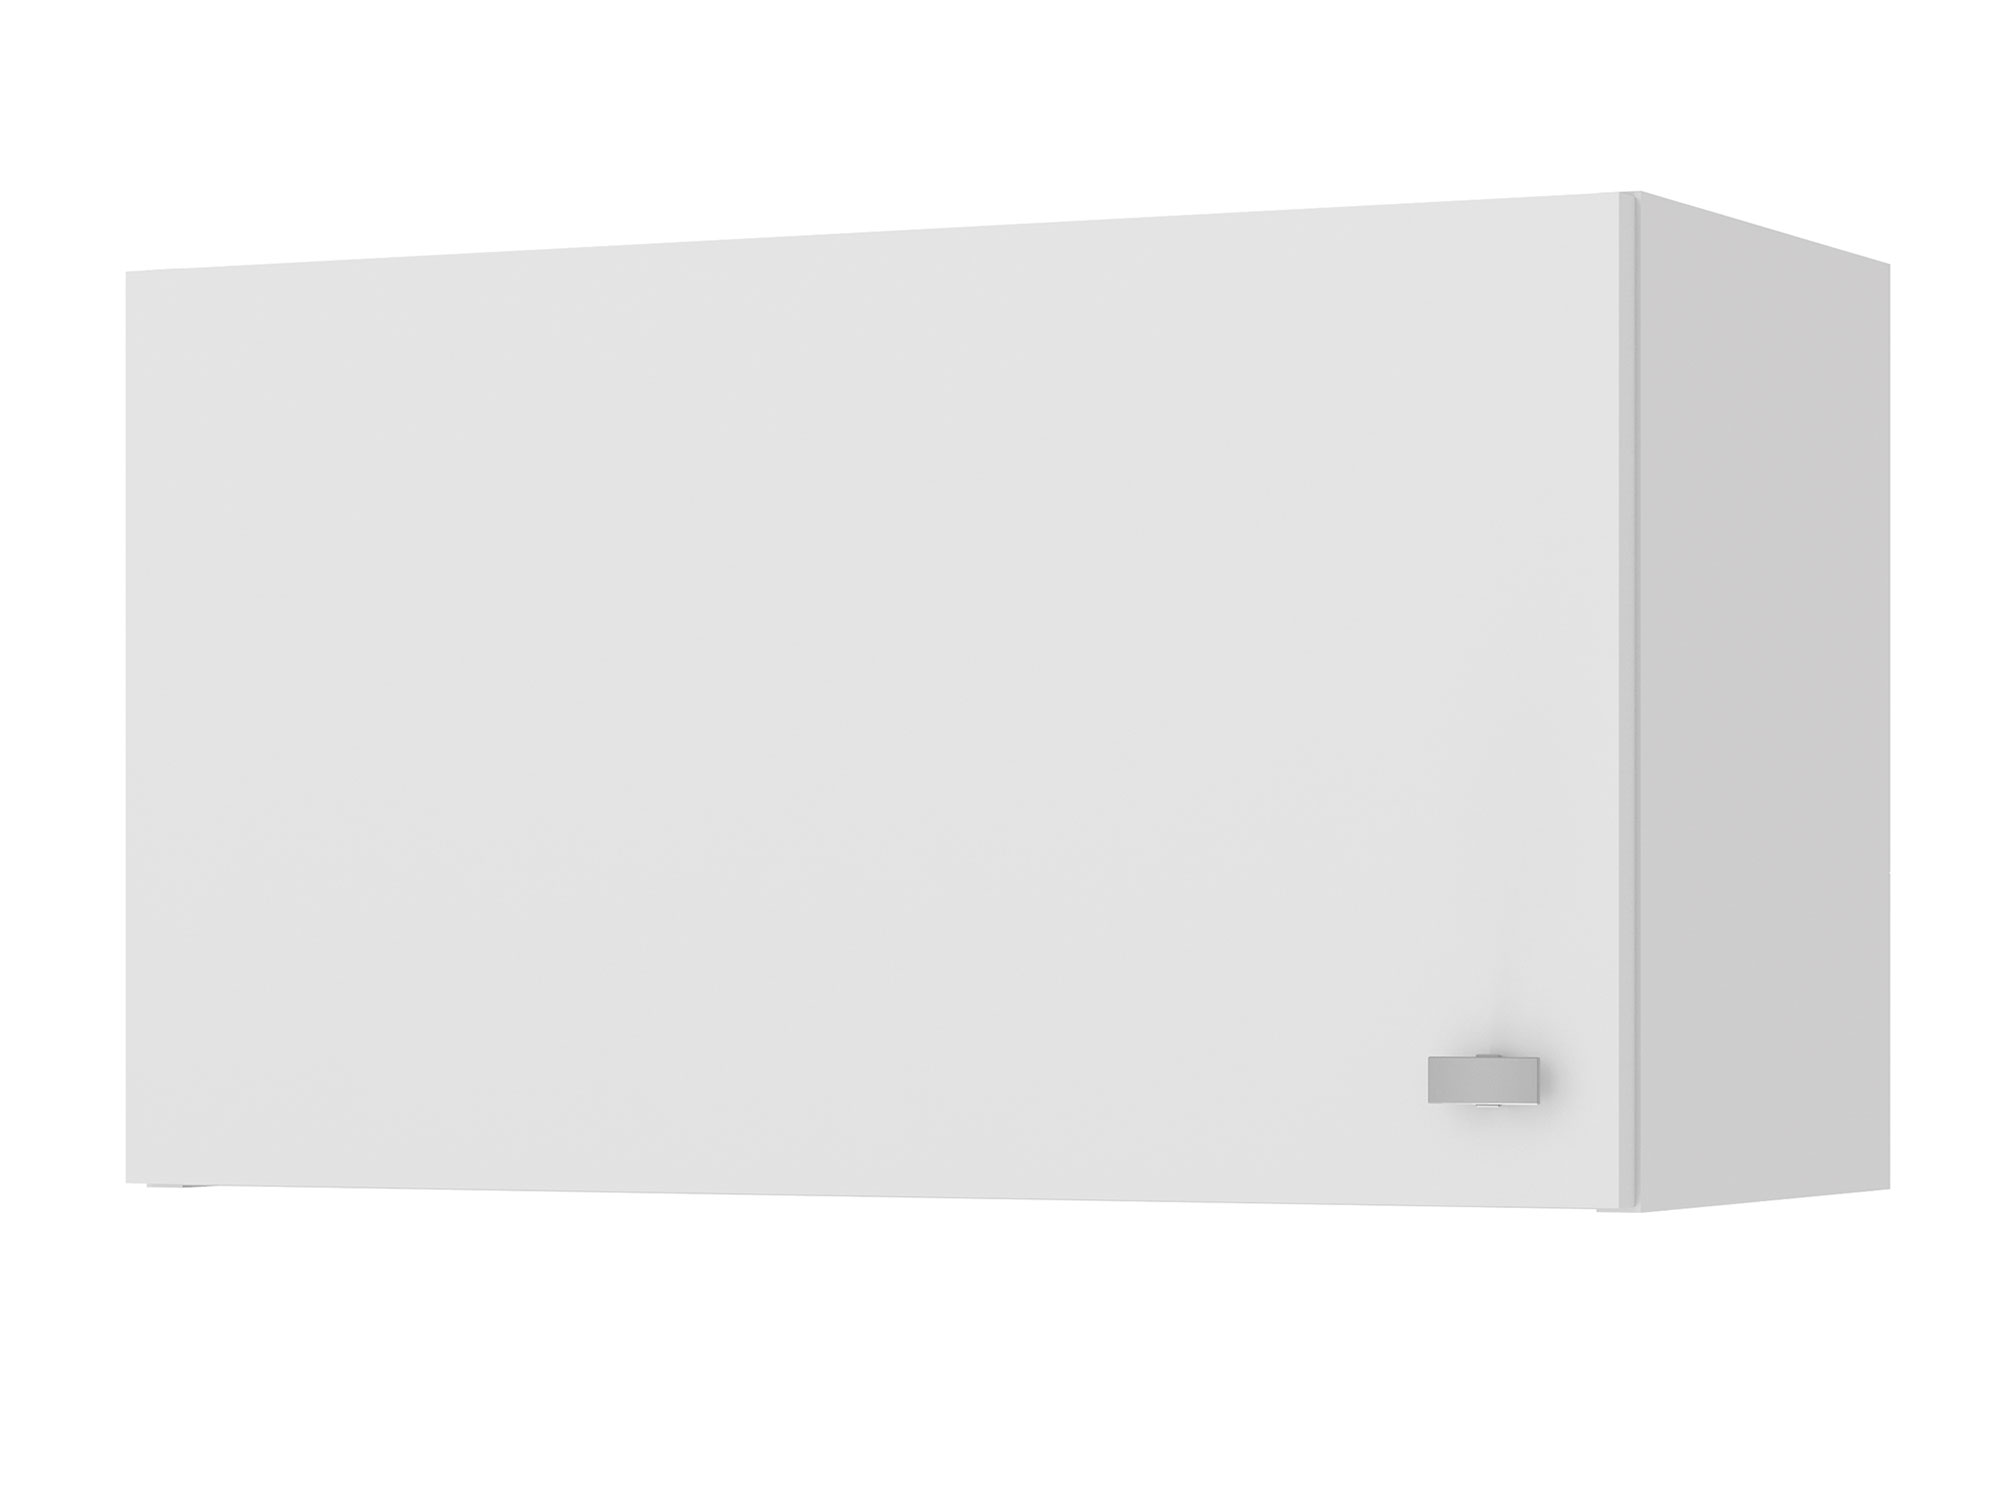 Скай шкаф навесной для вытяжки, 60 см Белый, ЛДСП шкаф навесной для вытяжки alta 60 см дуб филадельфия мокко бежевый мдф лдсп